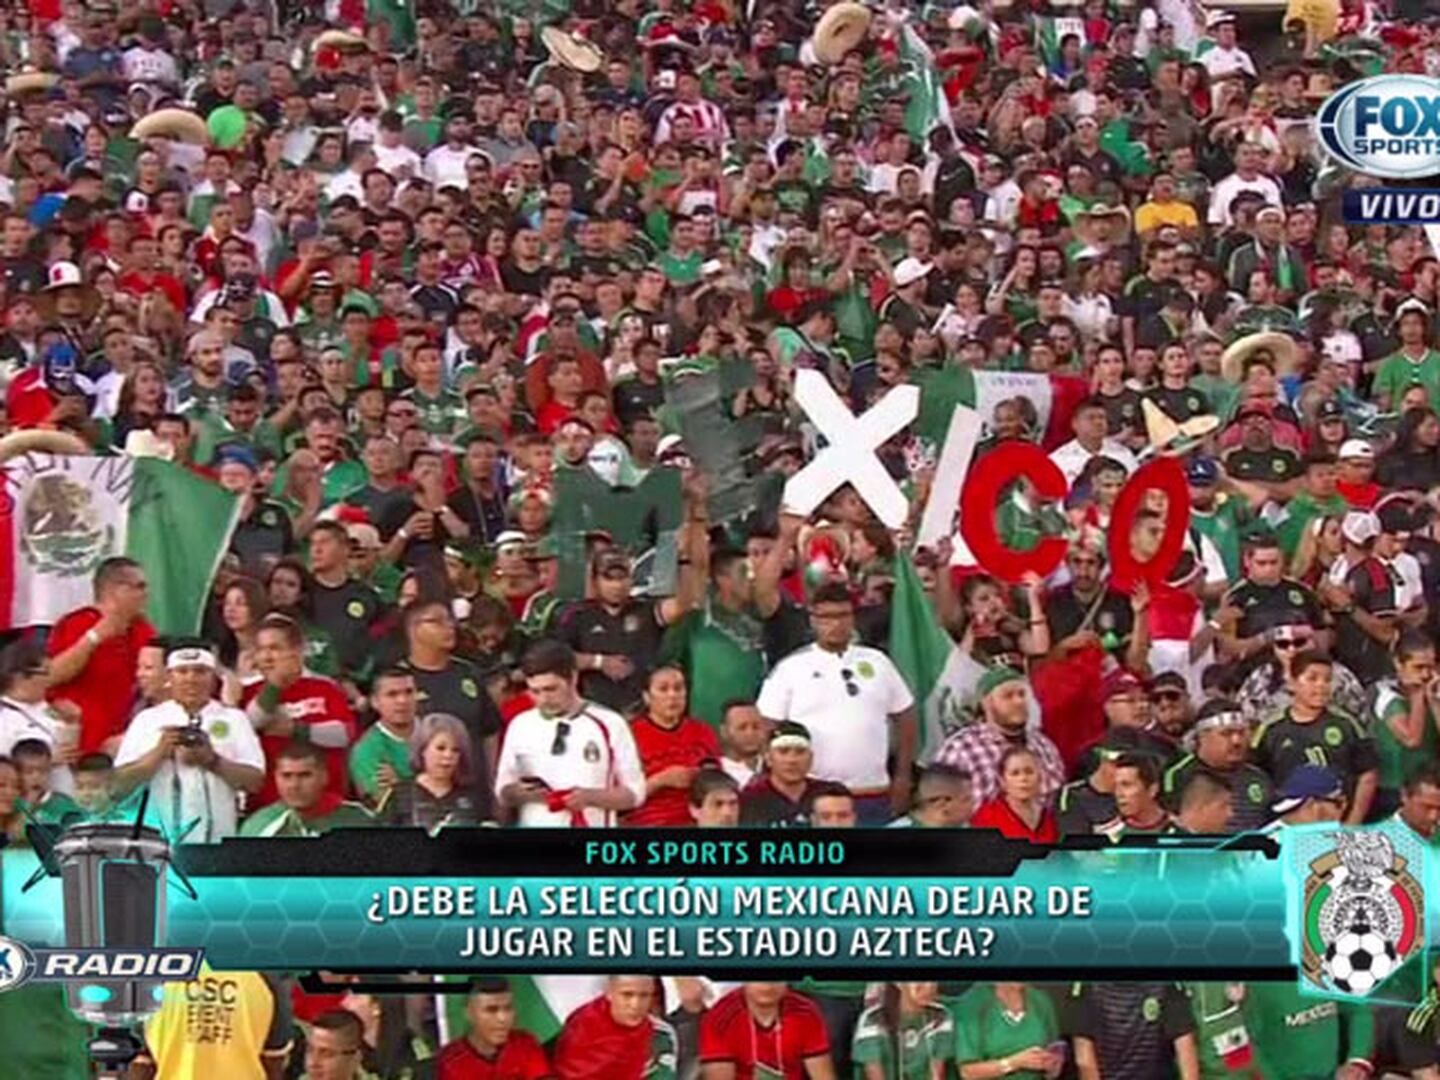 ¿La selección mexicana debe dejar de jugar en el Azteca?